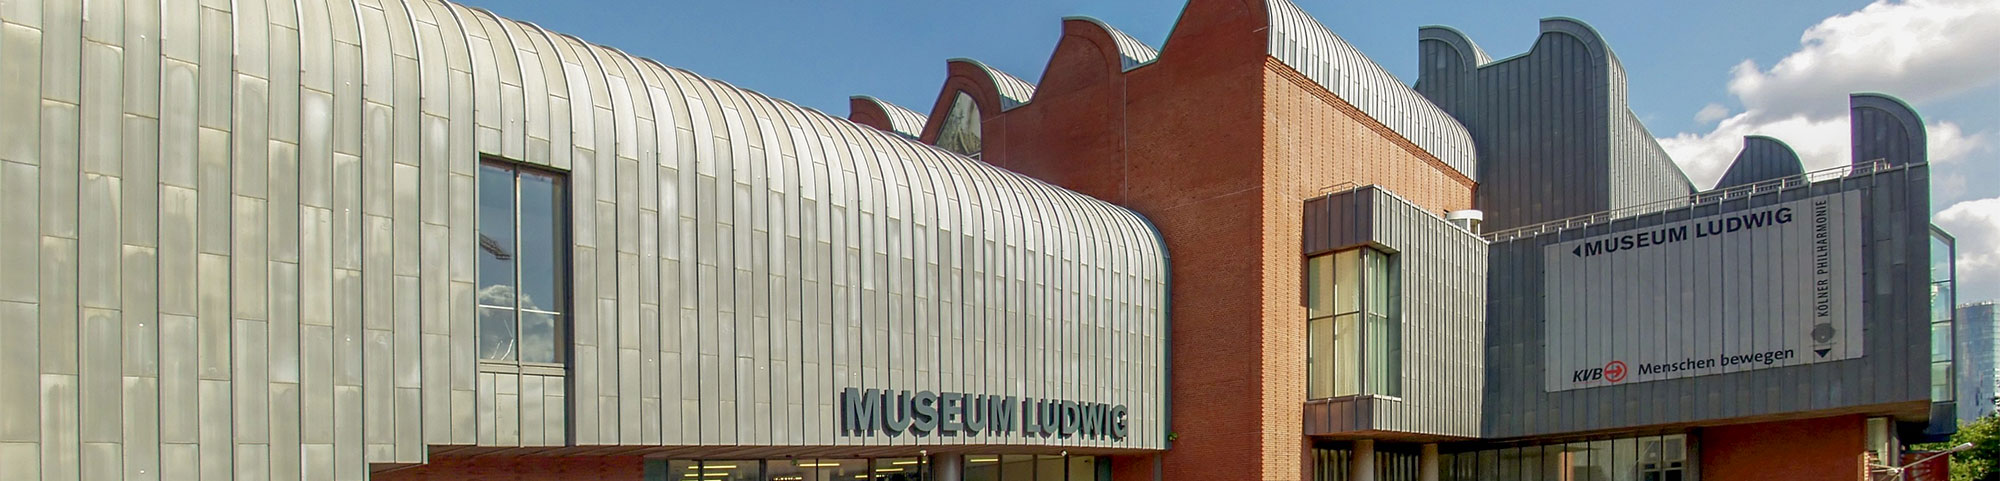 Museum Ludwig de Cologne